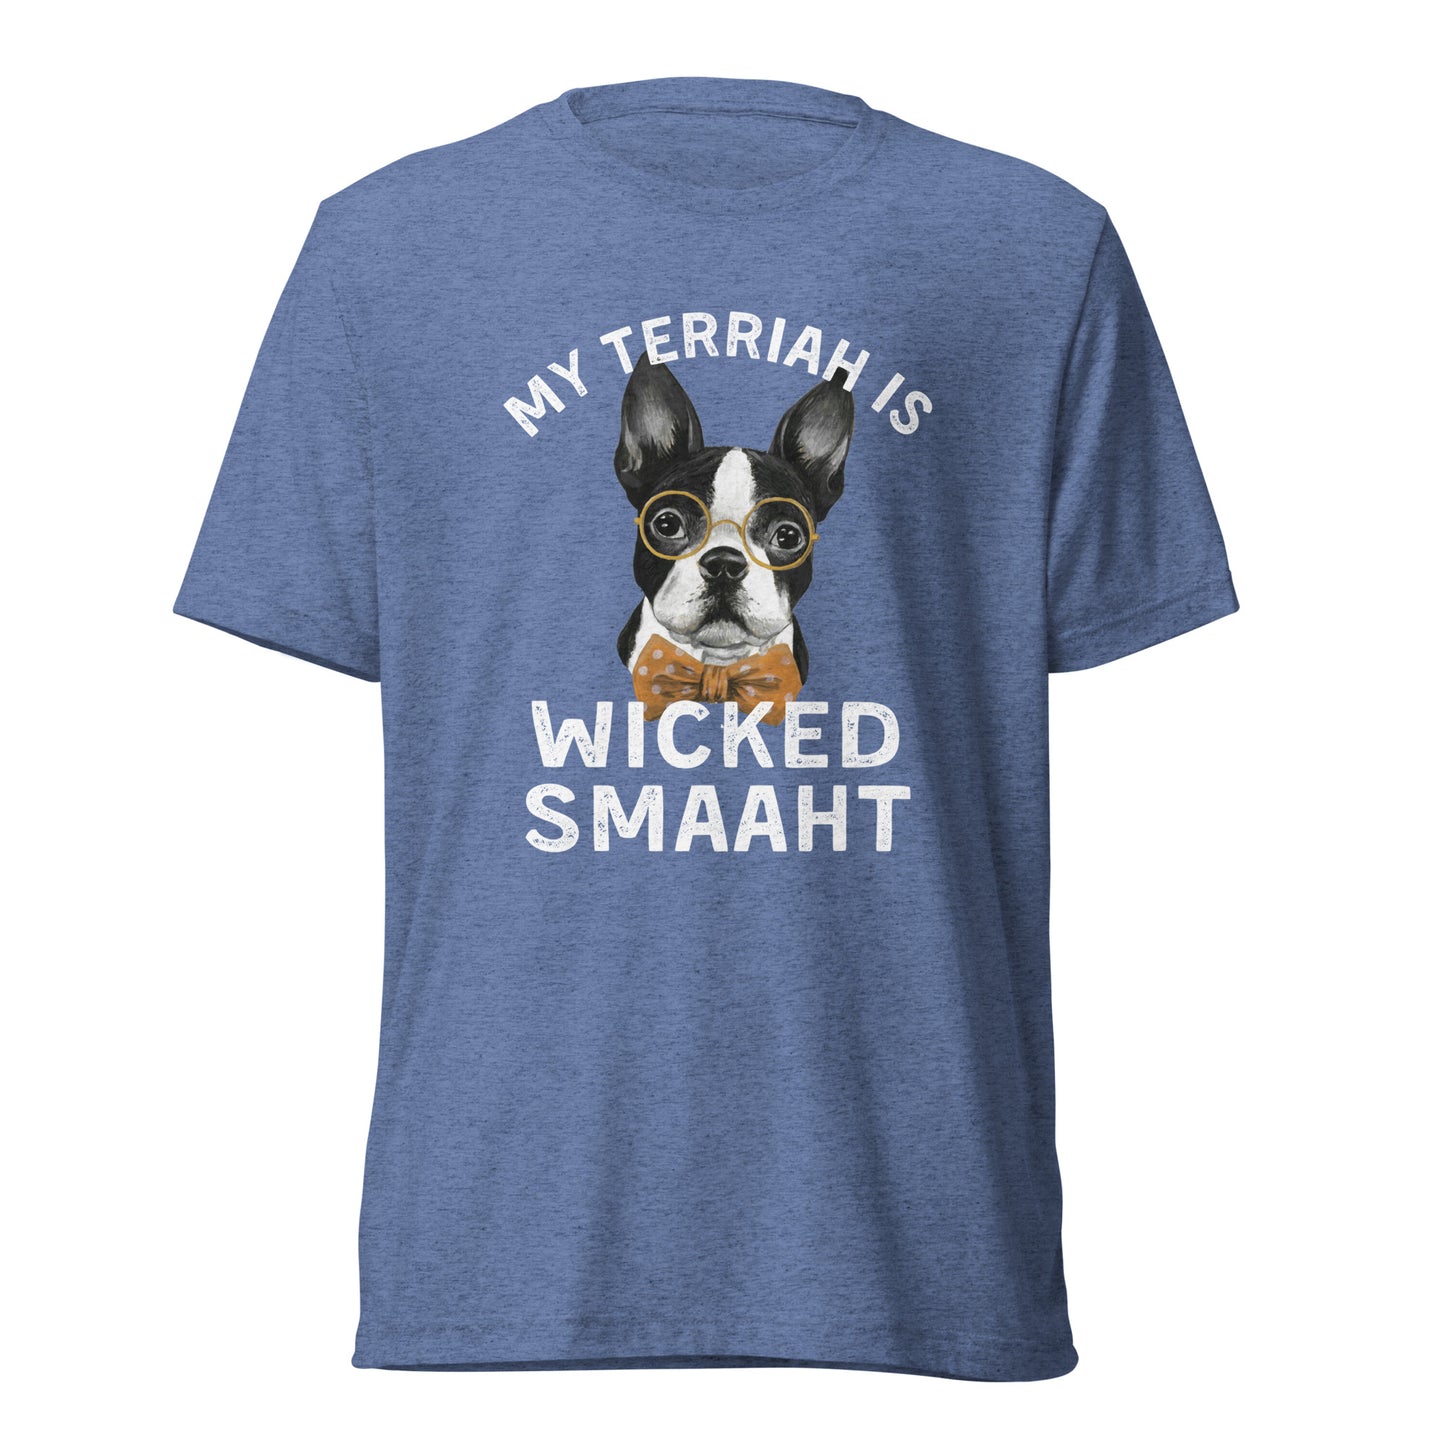 Wicked Smaaht Short sleeve t-shirt